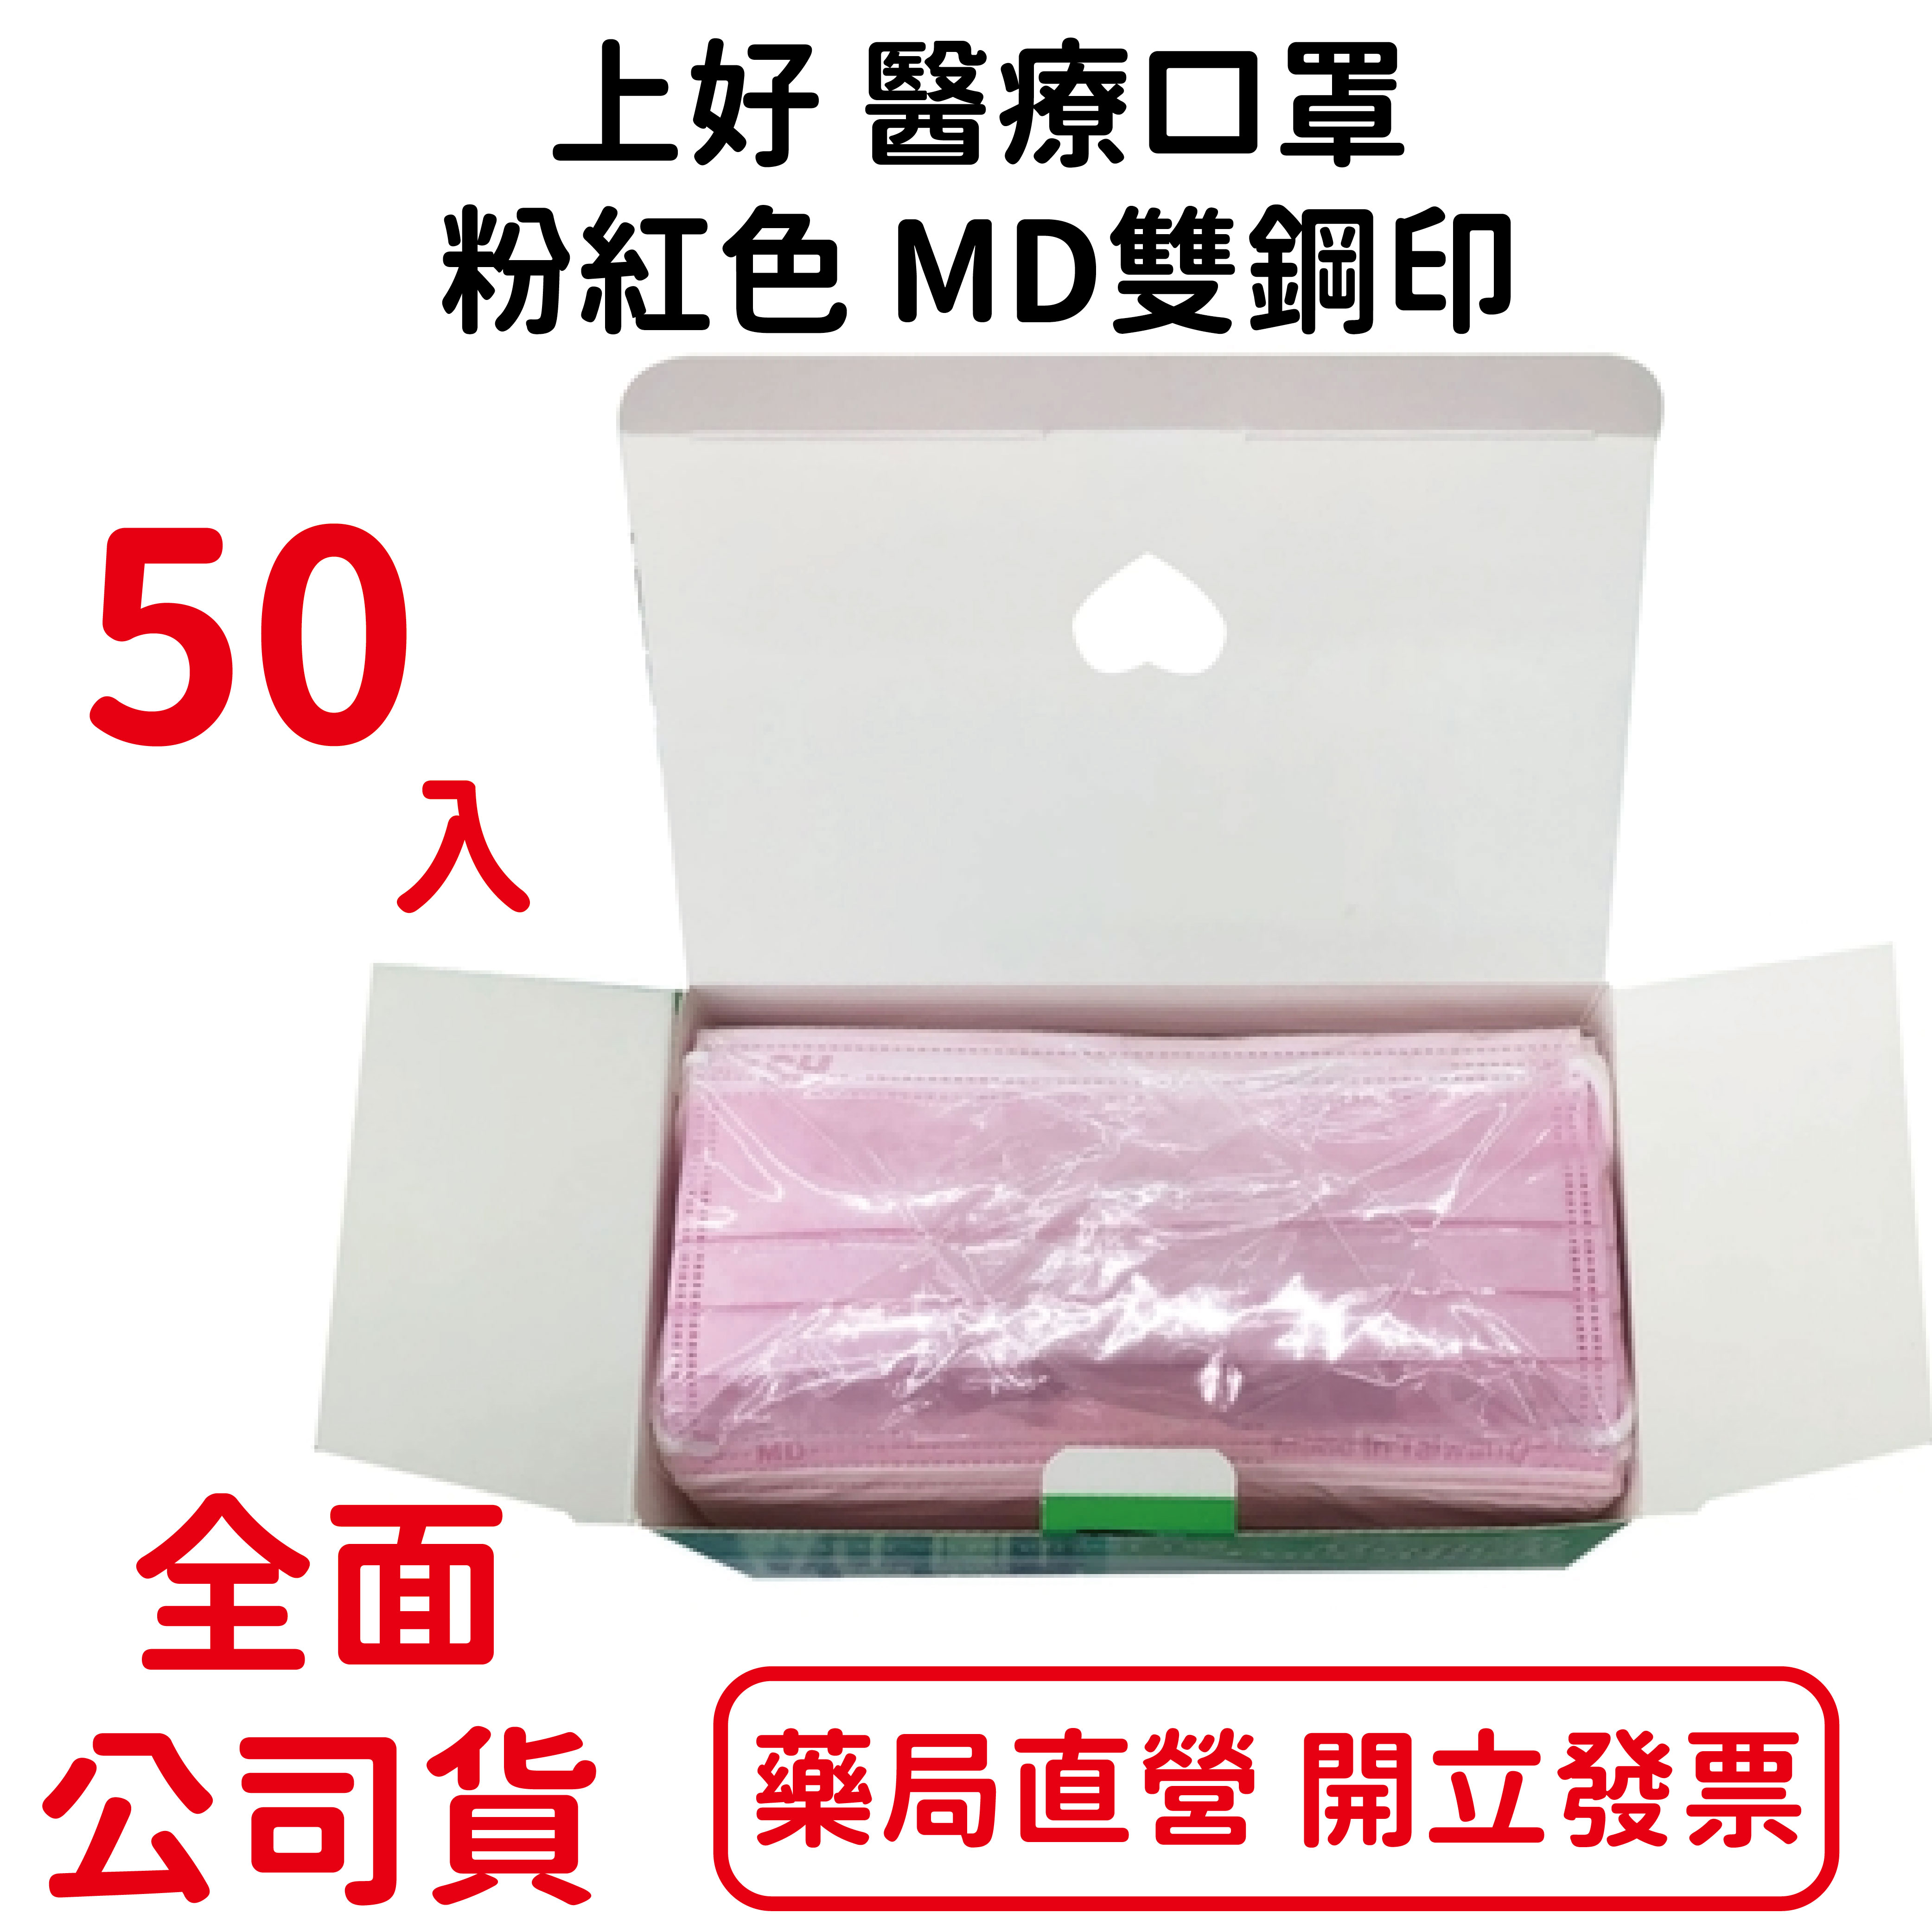 上好 醫療口罩 50入/盒 粉紅色 MD雙鋼印 符合國家標準CNS14774 口罩國家隊